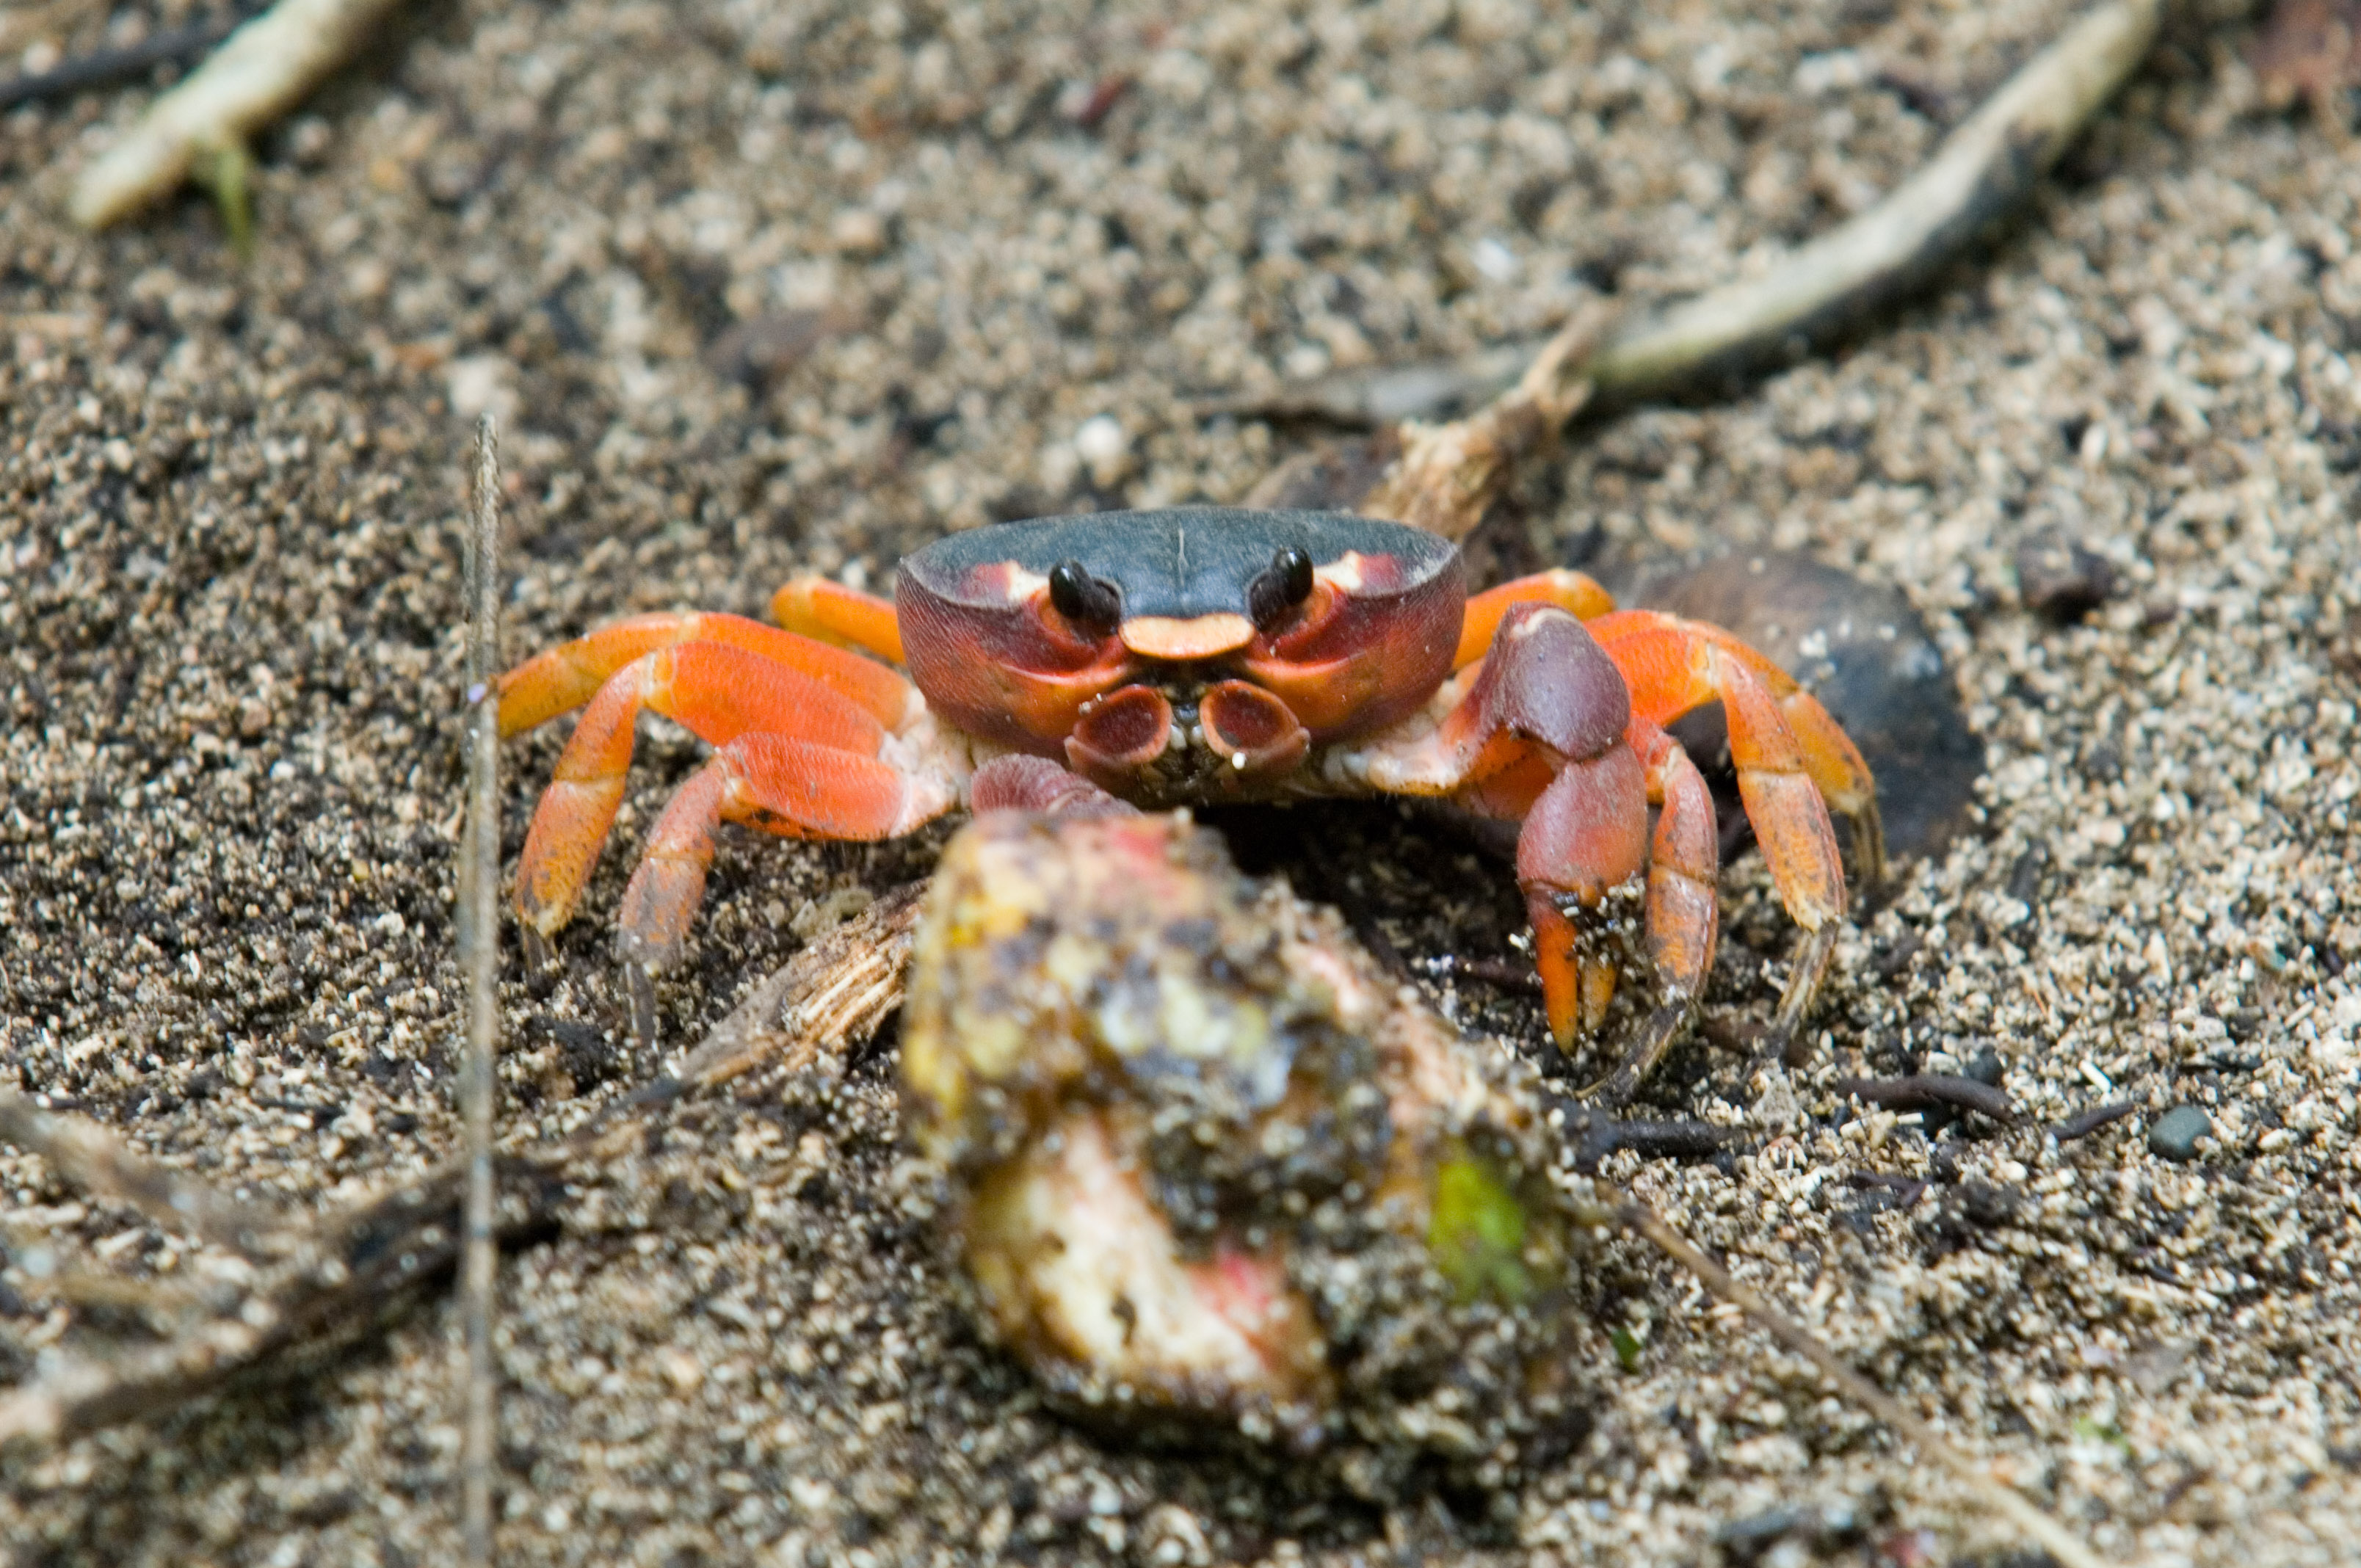 Small Land Crab